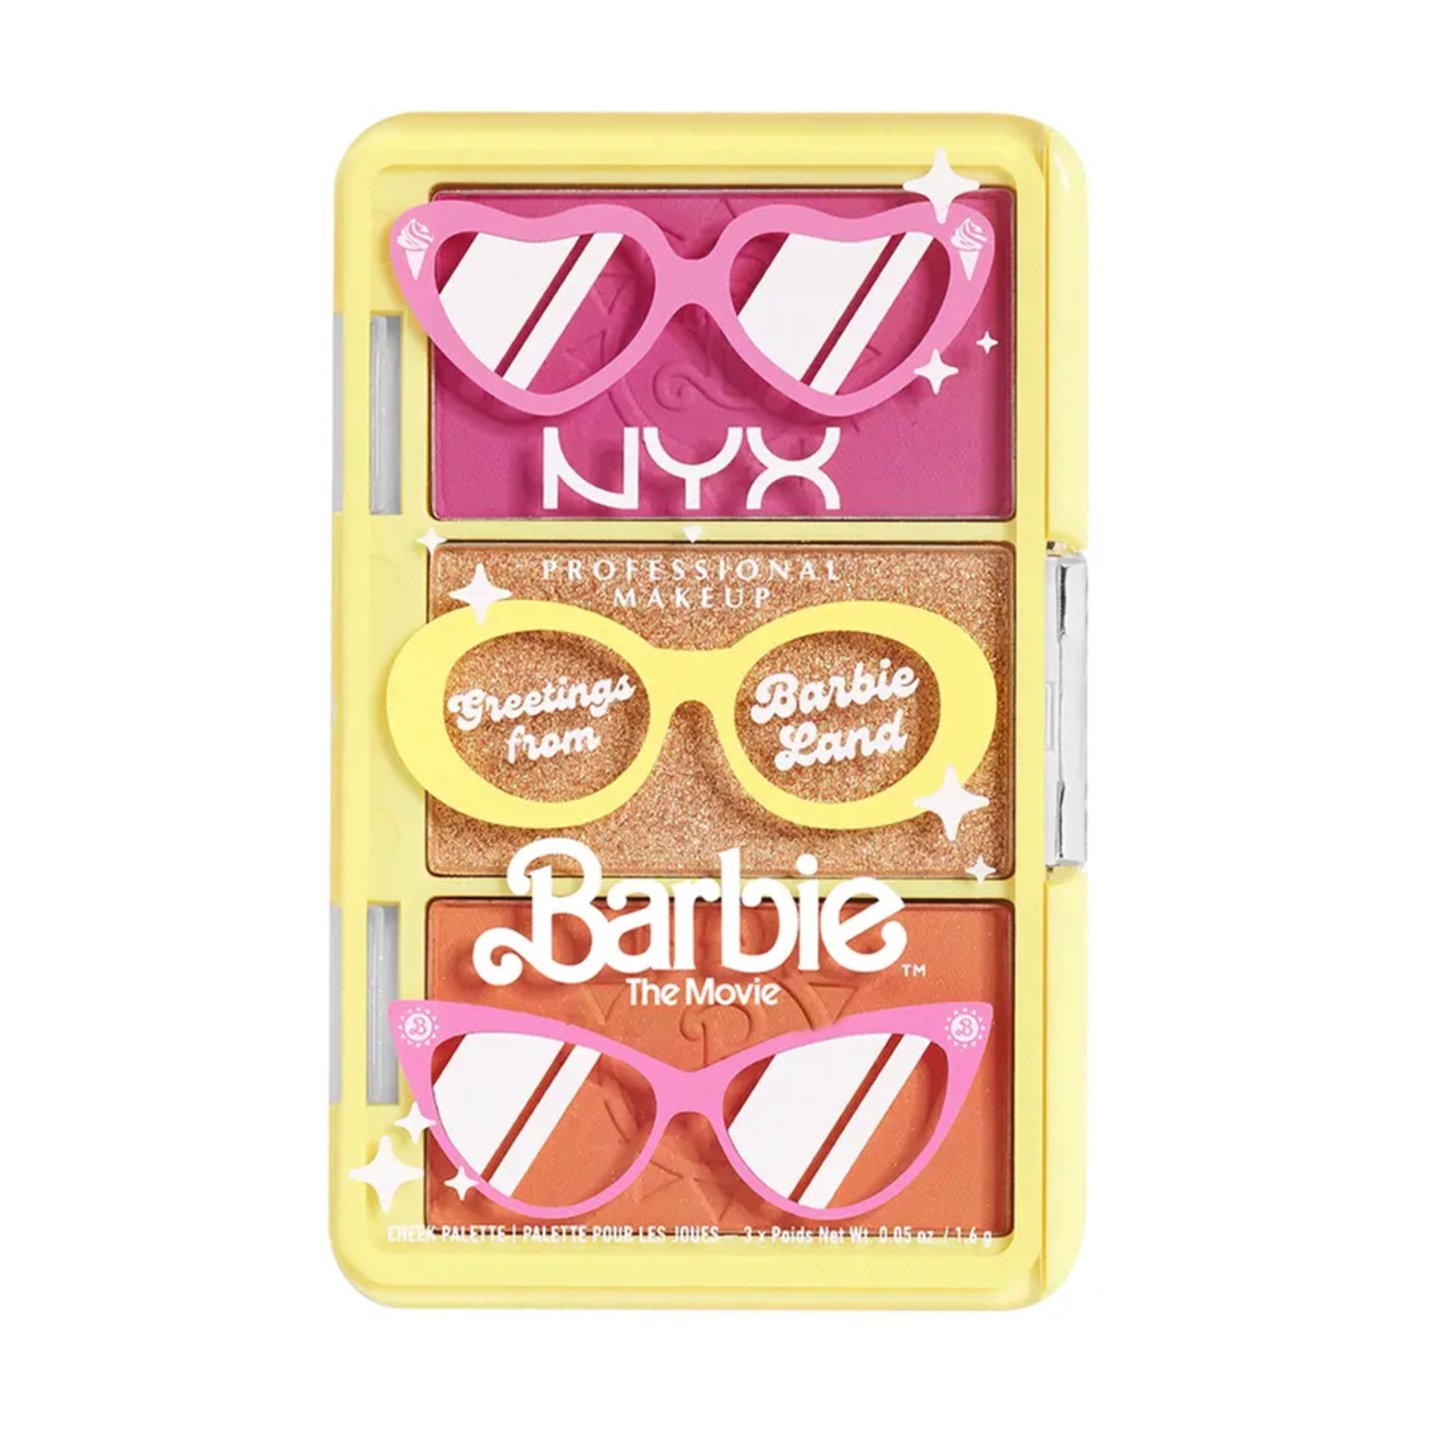 Extra für Barbie-Fans: Den Kinozauber kannst du noch eine Weile nachwirken lassen und mit diesen Wangenfarben der Limited Edition von Nyx in die Rosa-Glitzer-Welt eintauchen. Die Barbie Mini Cheek-Palette kostet etwa 14 Euro. 